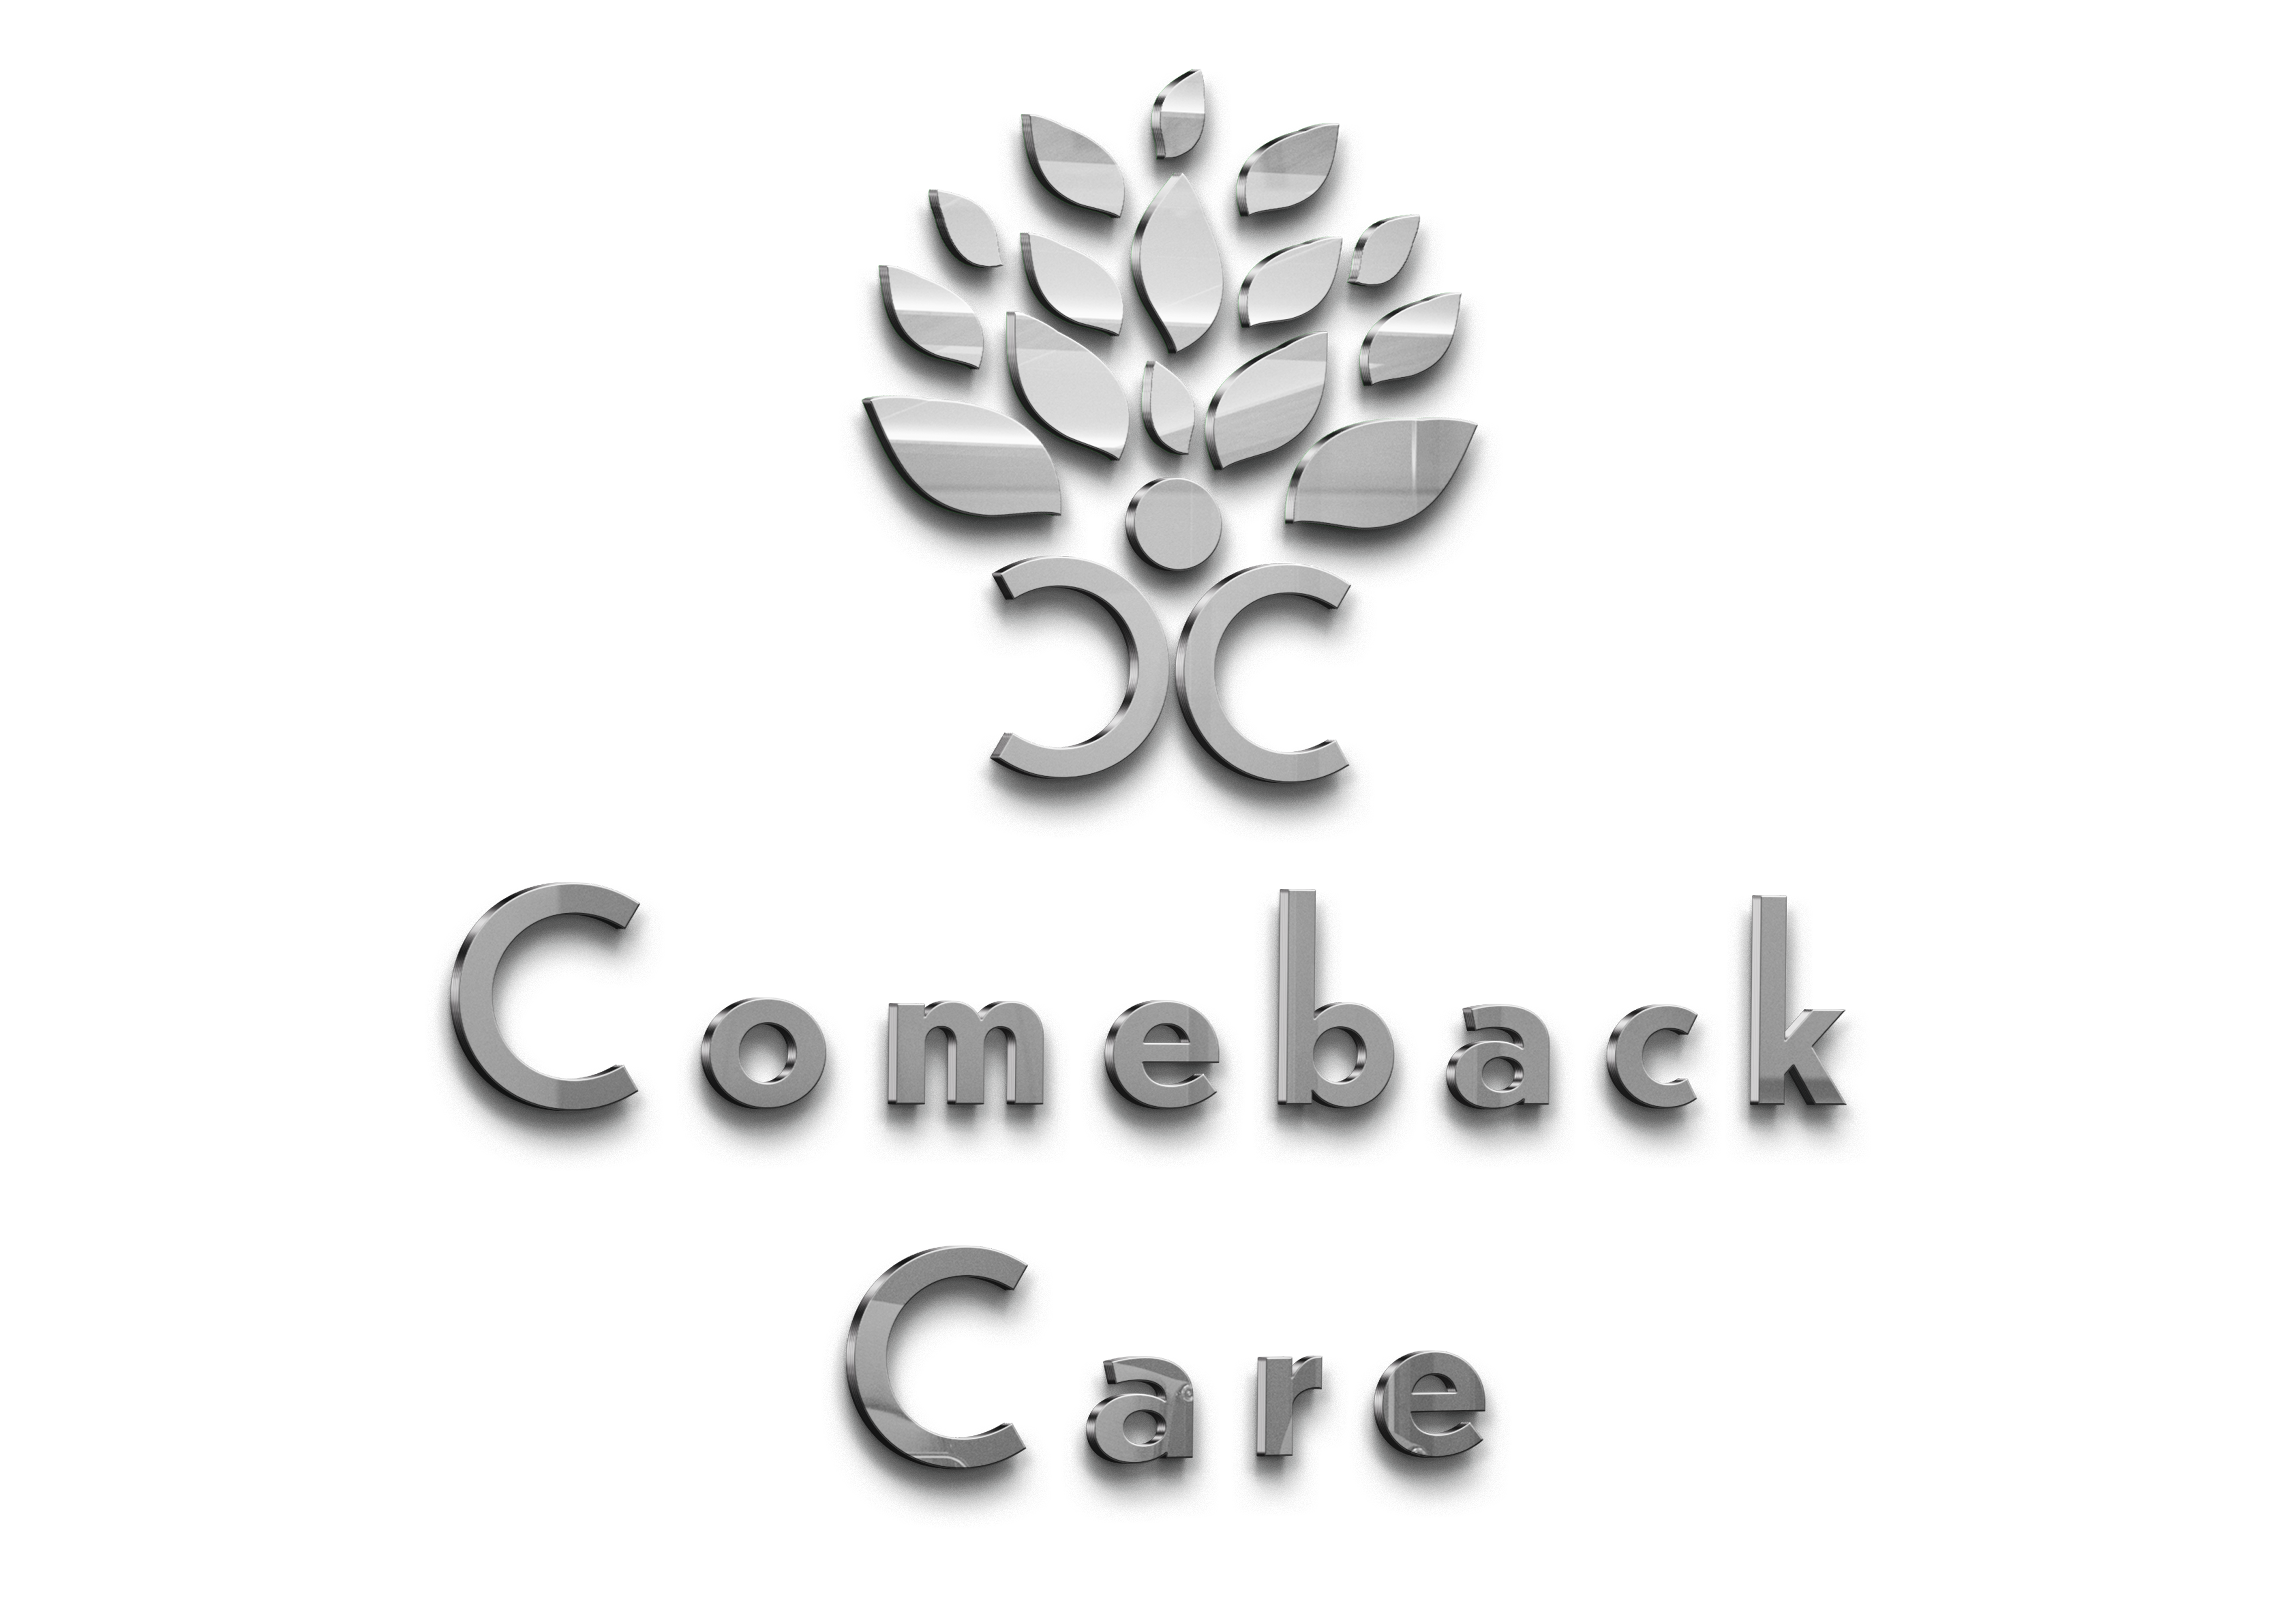 Comeback Care